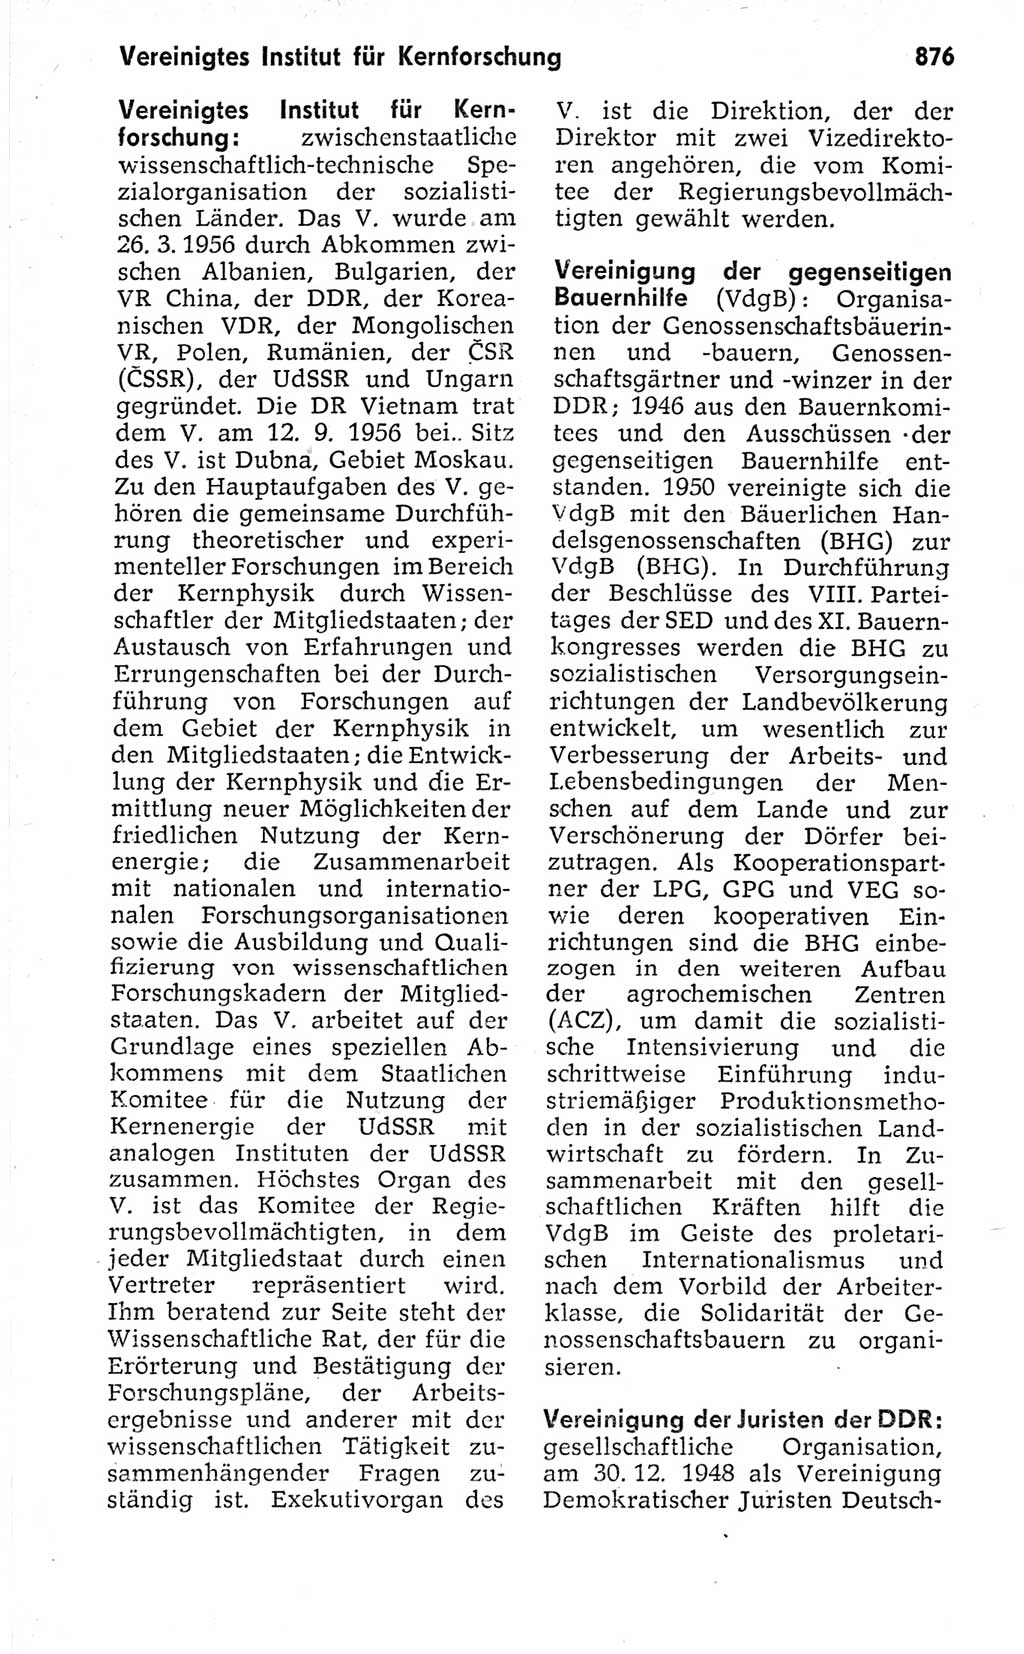 Kleines politisches Wörterbuch [Deutsche Demokratische Republik (DDR)] 1973, Seite 876 (Kl. pol. Wb. DDR 1973, S. 876)